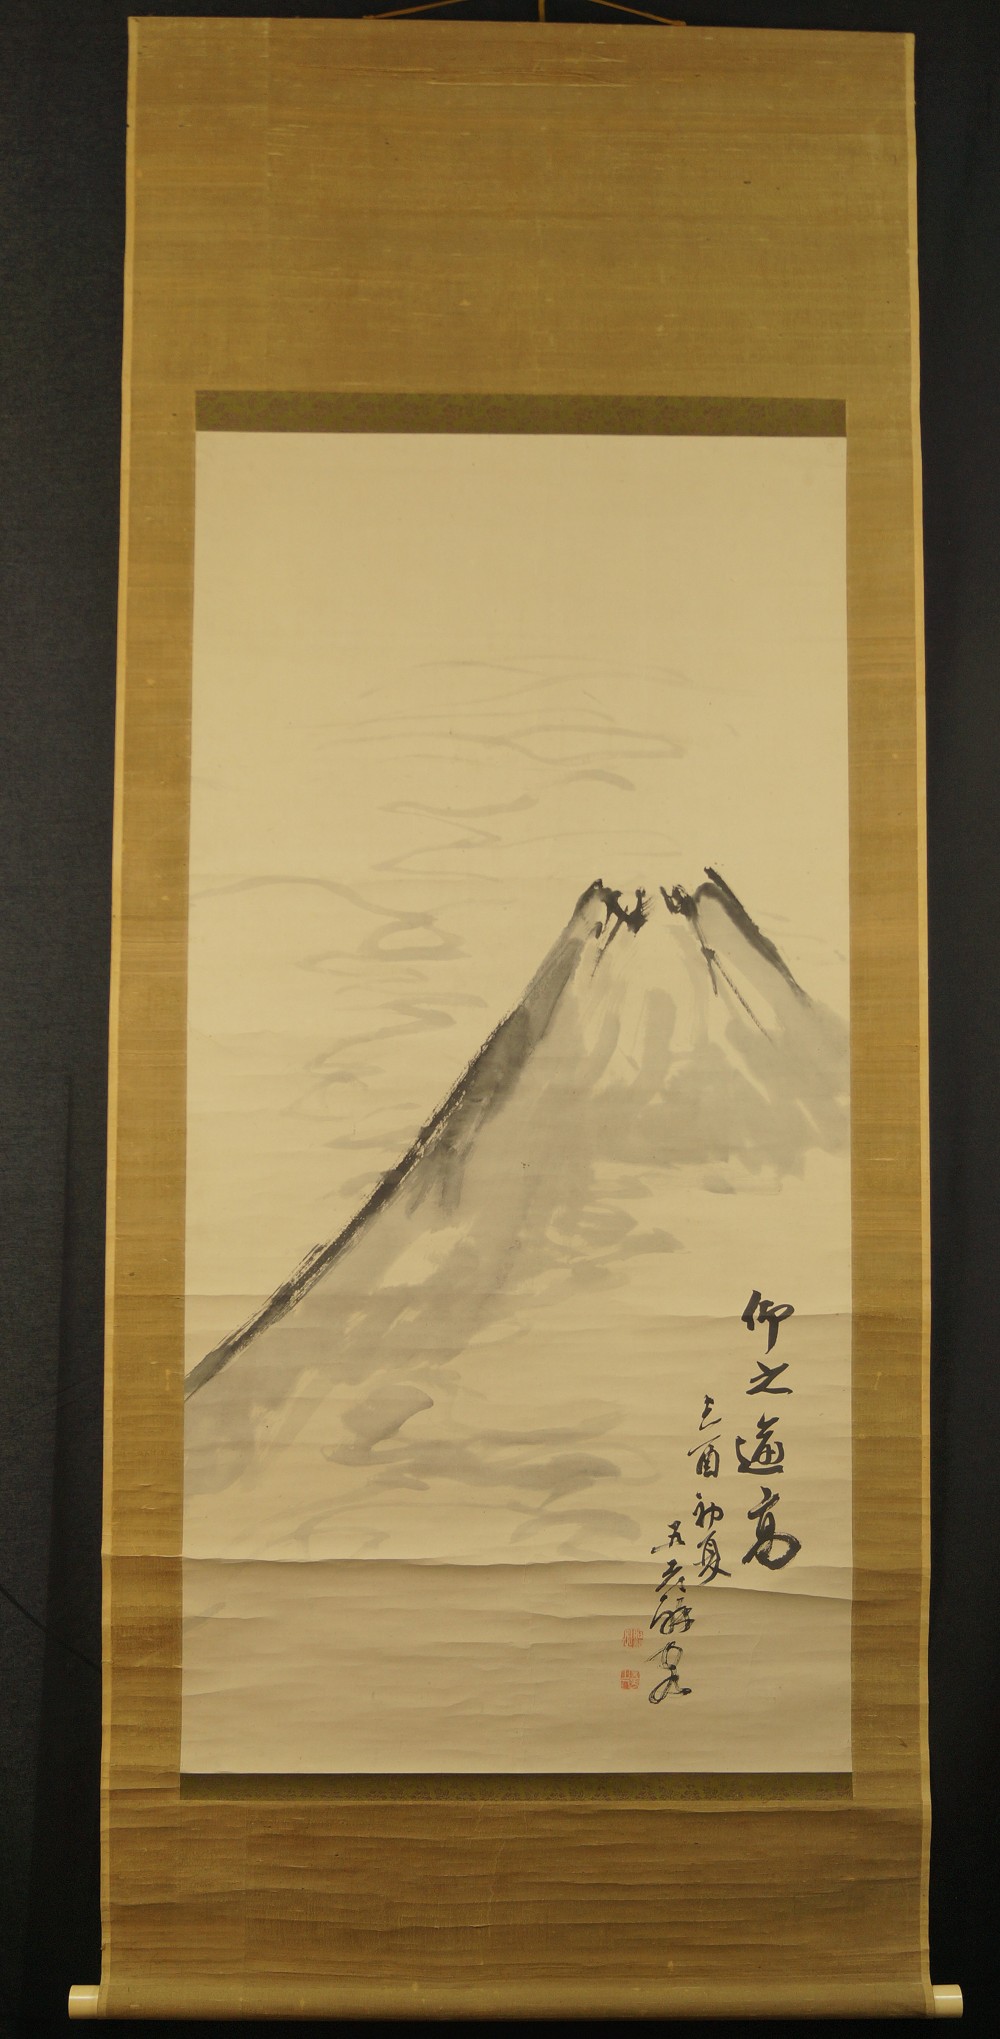 Berg Fuji - Japanisches Rollbild (Kakejiku, Kakemono)